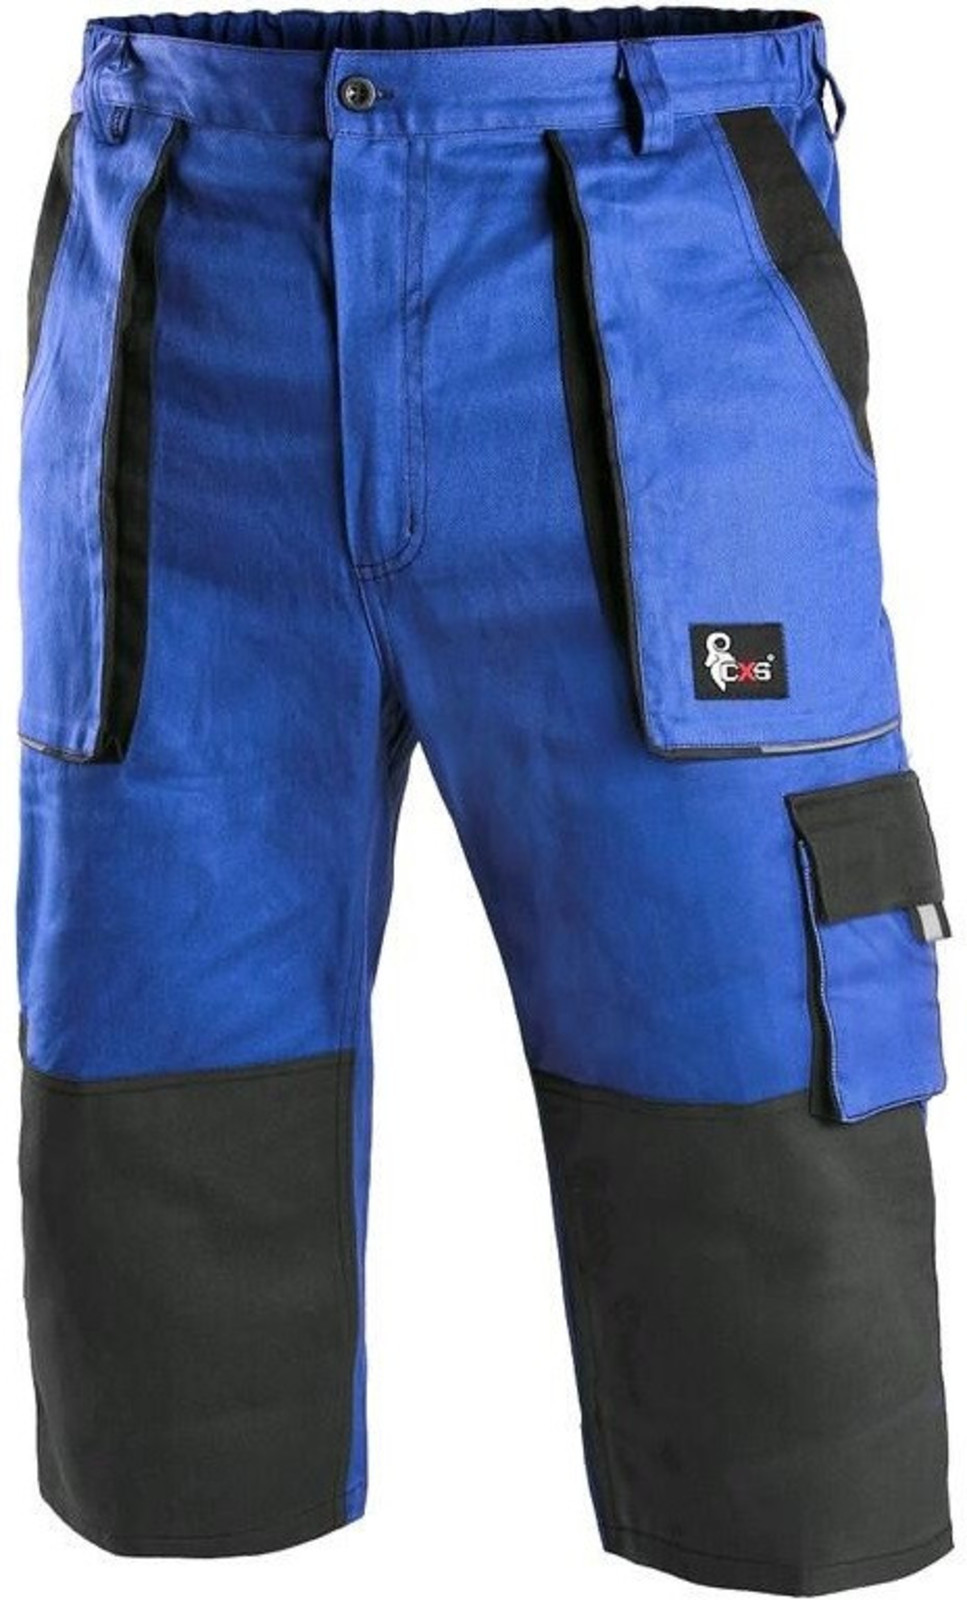 Pánske montérkové 3/4 nohavice CXS Luxy Patrik - veľkosť: 64, farba: modrá/čierna